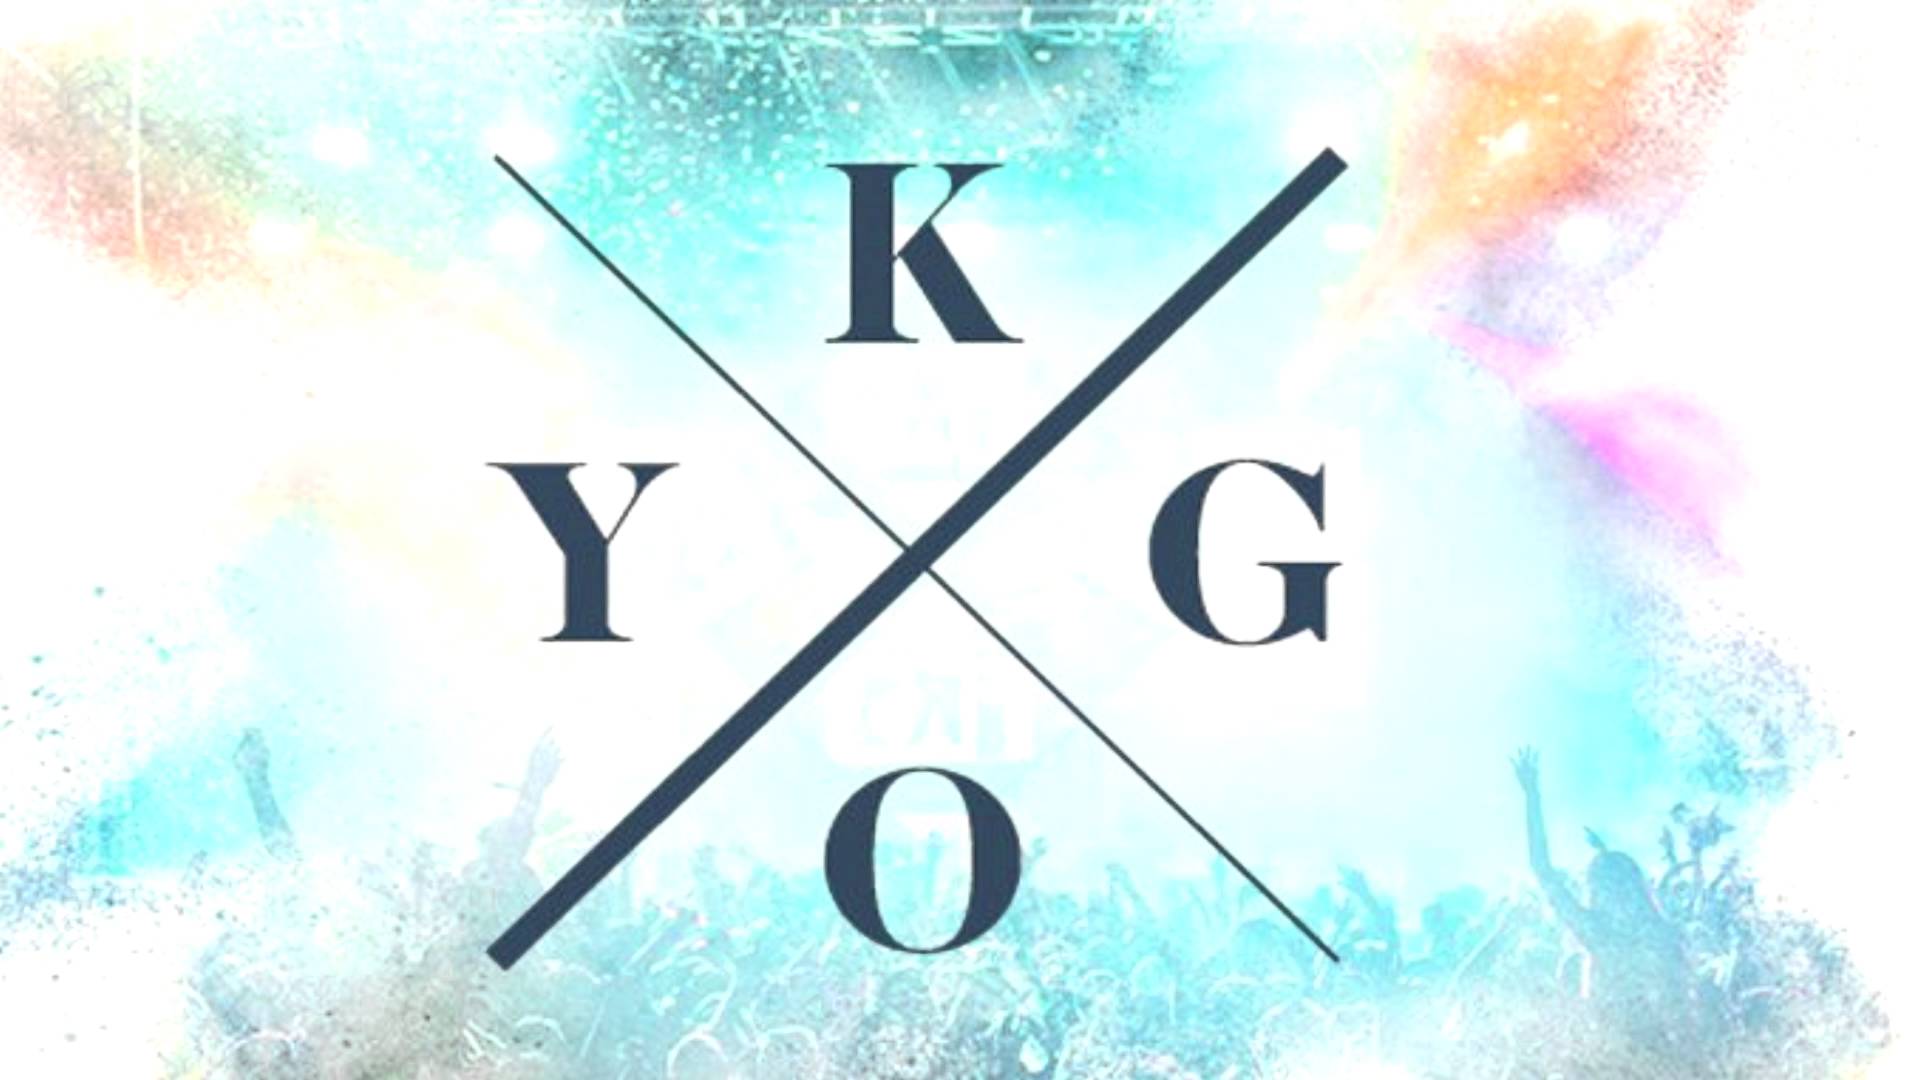 Kygo Logos